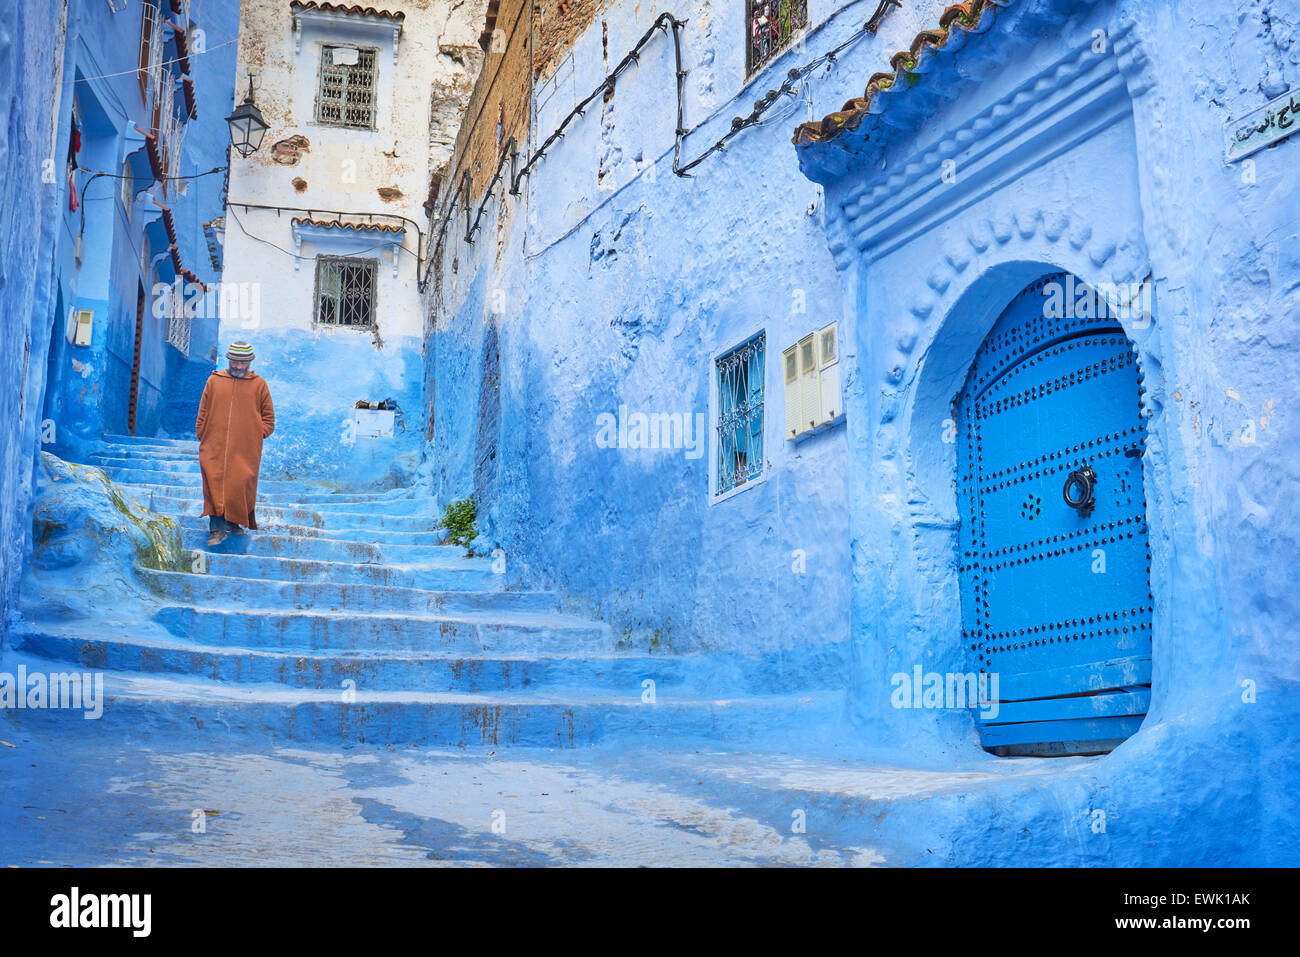 Blau gestrichene Wände in alte Medina von Chefchaouen, Marokko, Afrika Stockfoto